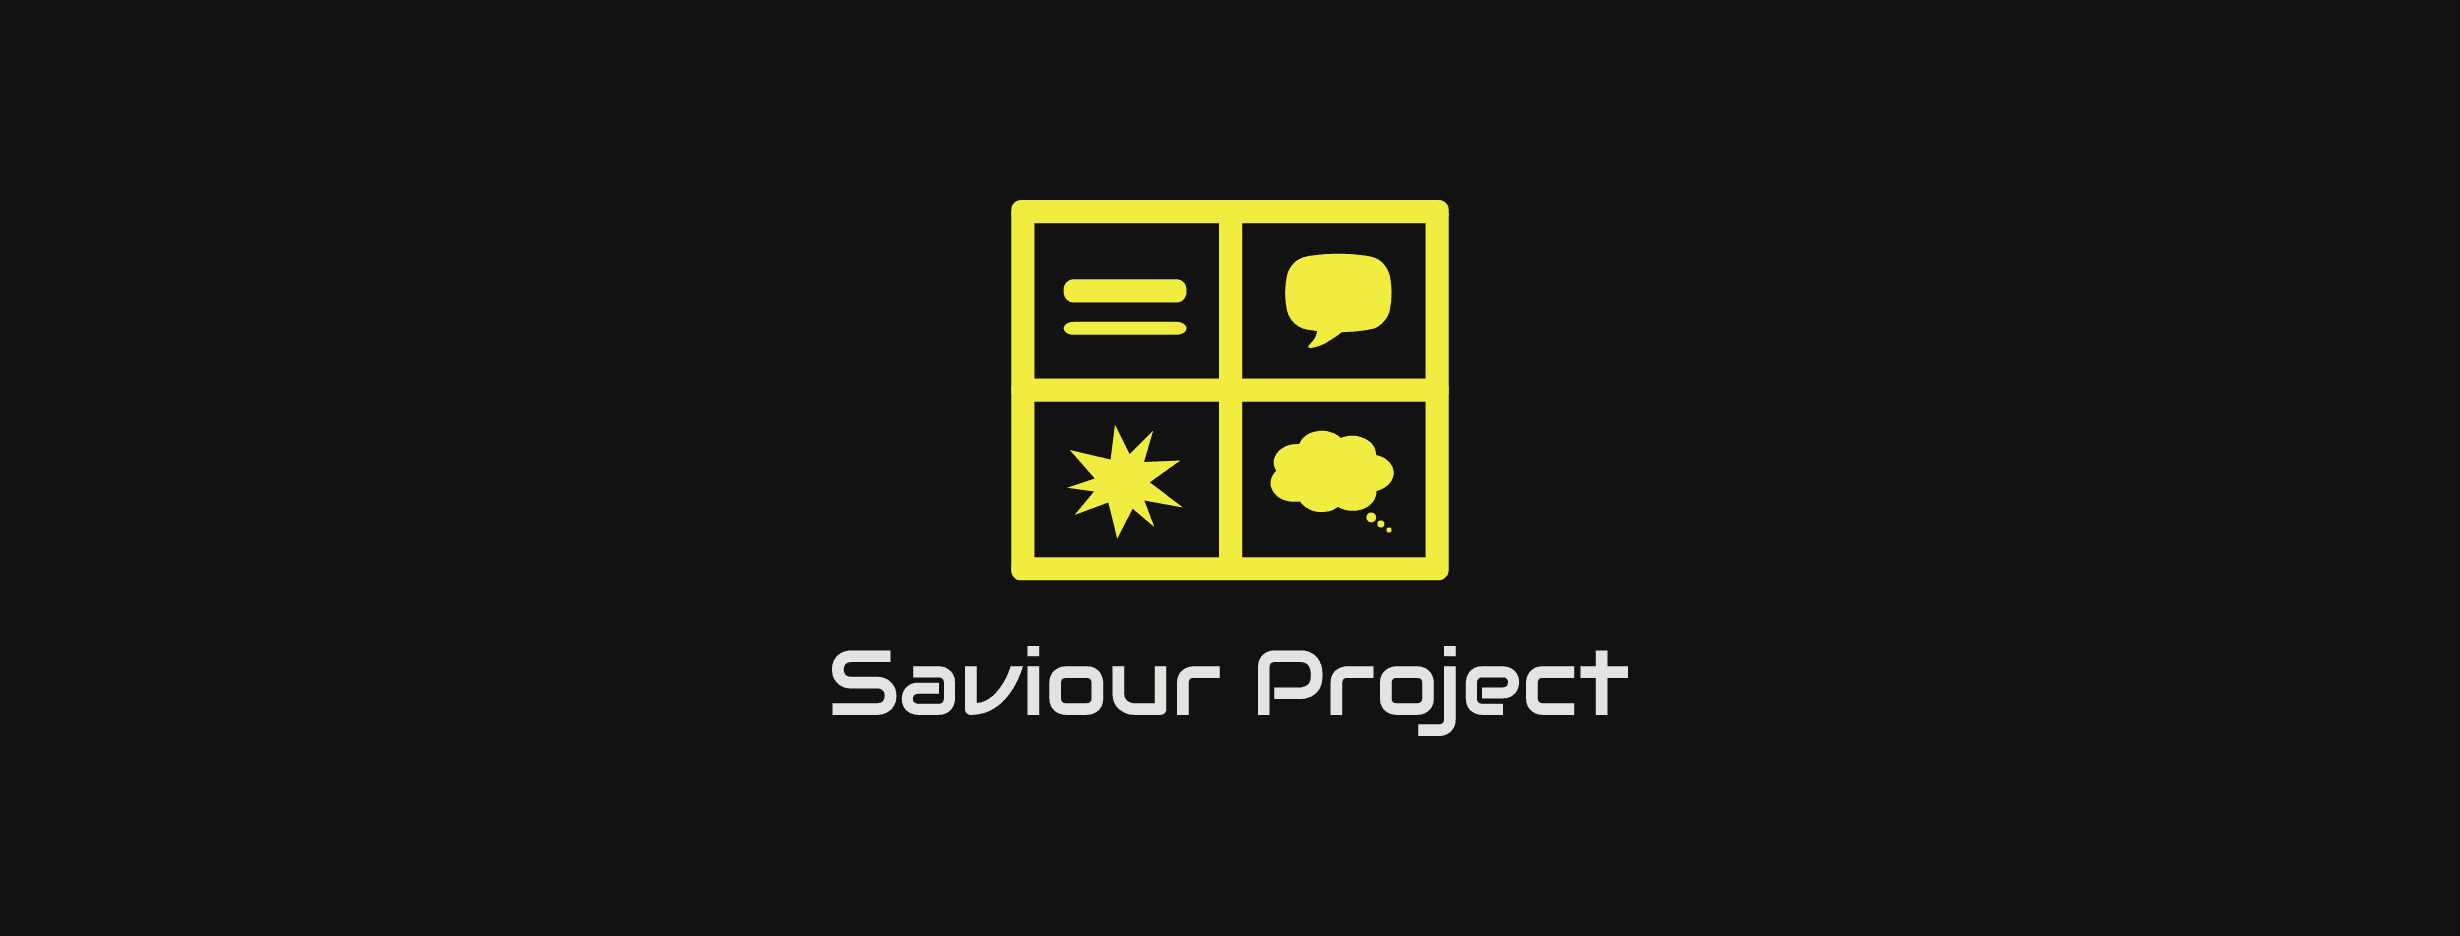 The-Saviour-Project 横幅